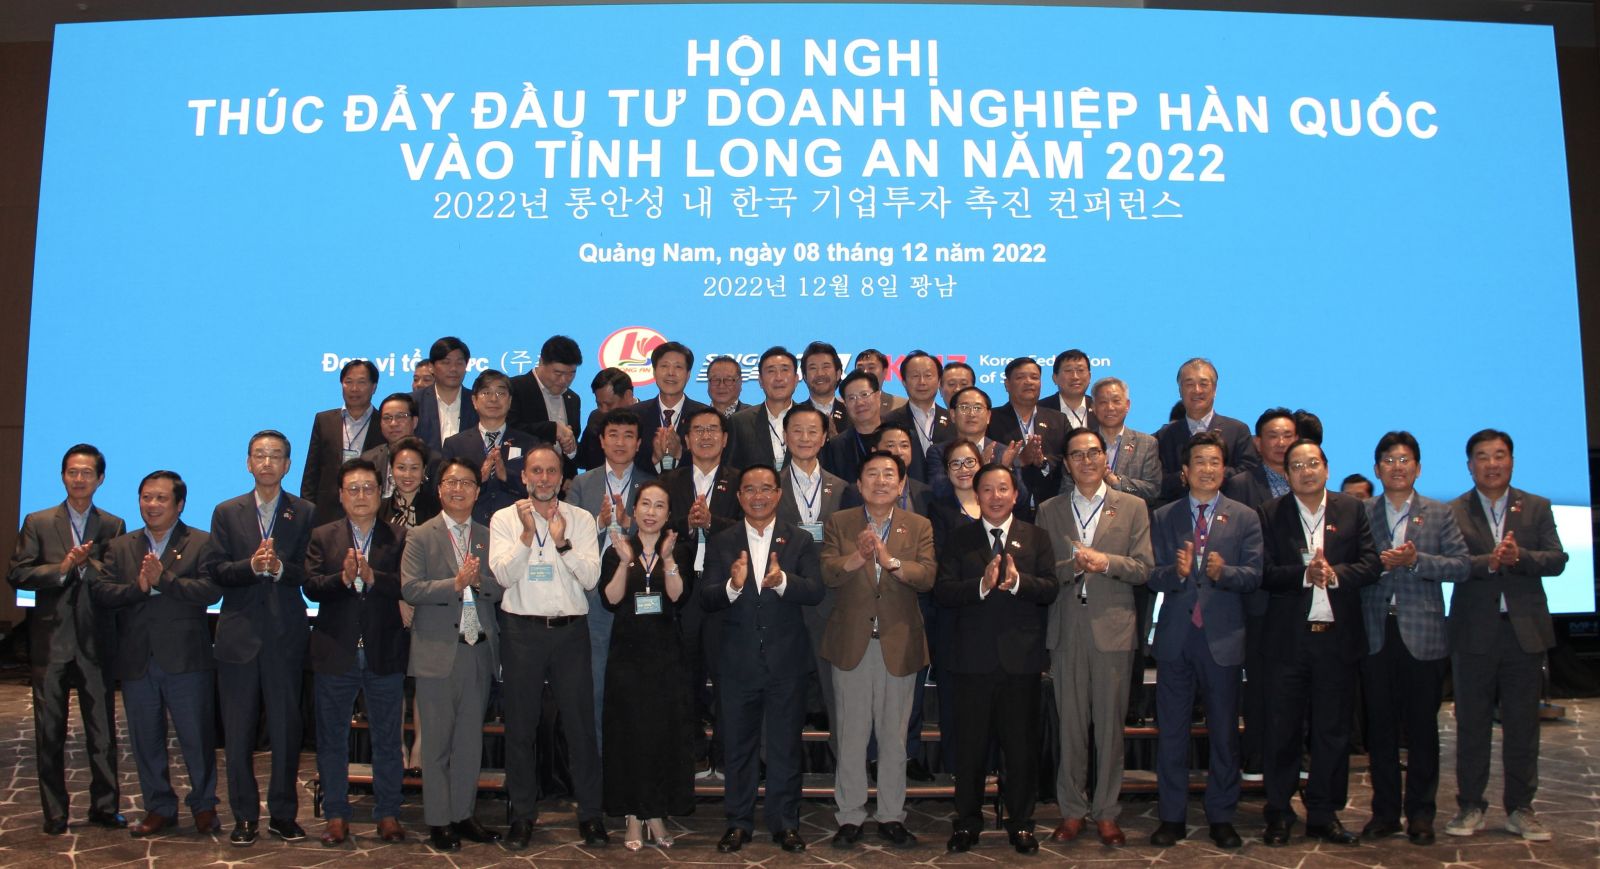 Hội nghị Thúc đẩy đầu tư doanh nghiệp Hàn Quốc vào tỉnh Long An năm 2022